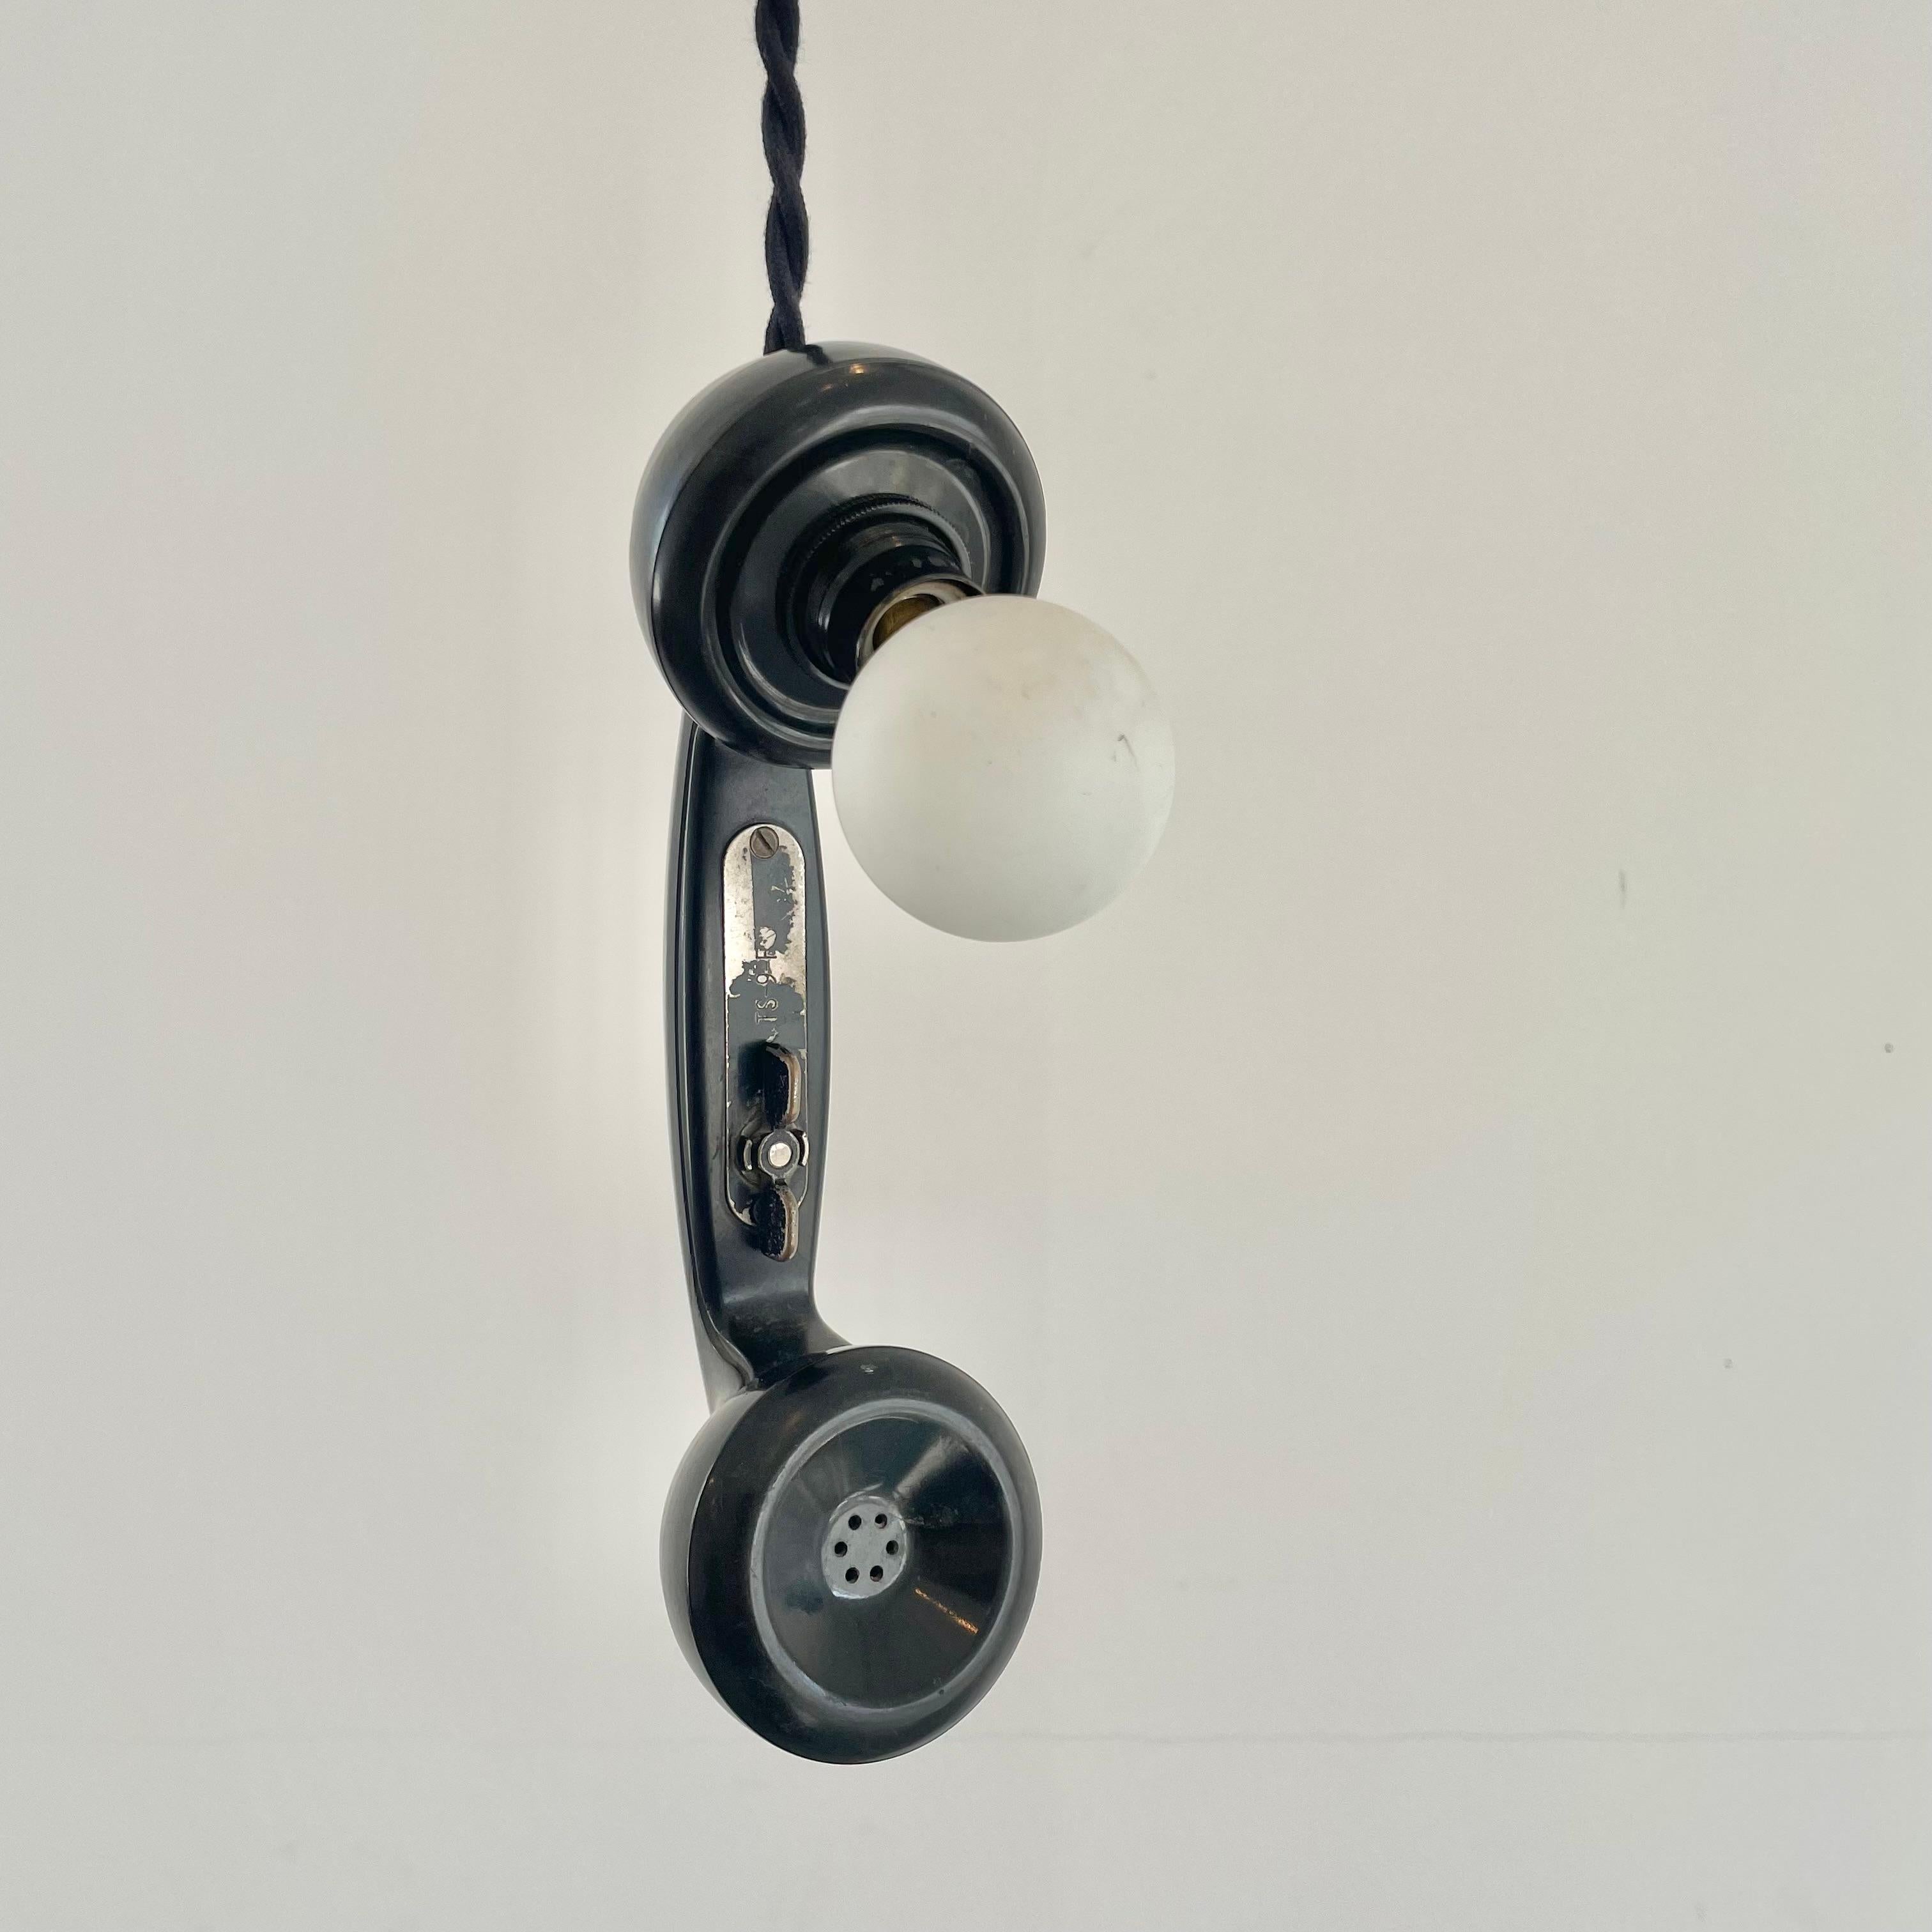 Lampe de téléphone incroyablement unique fabriquée à partir d'un vieux téléphone des années 60.  L'ampoule ambre éclaire magnifiquement et donne une impression de chaleur vintage. Elle peut être suspendue à un bar ou posée sur une table ou un